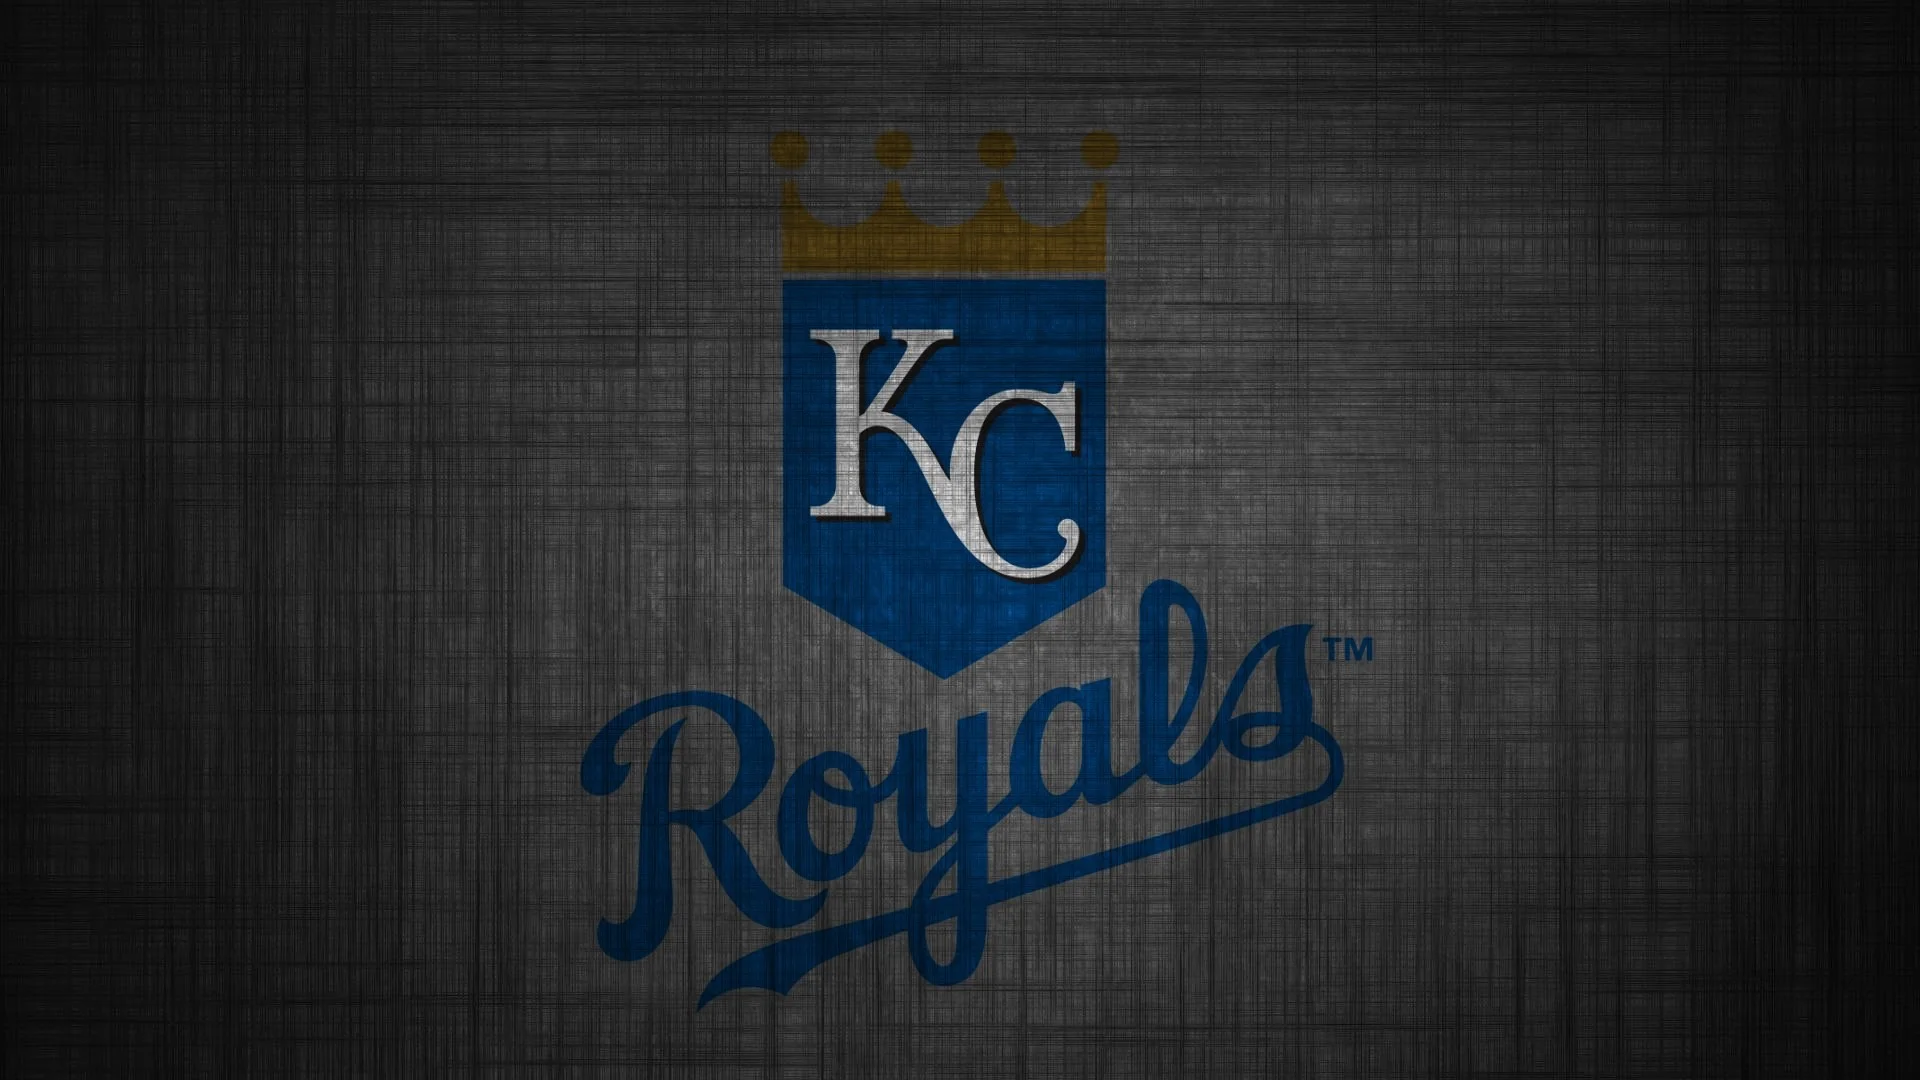 2 HD Kansas City Royals Wallpapers